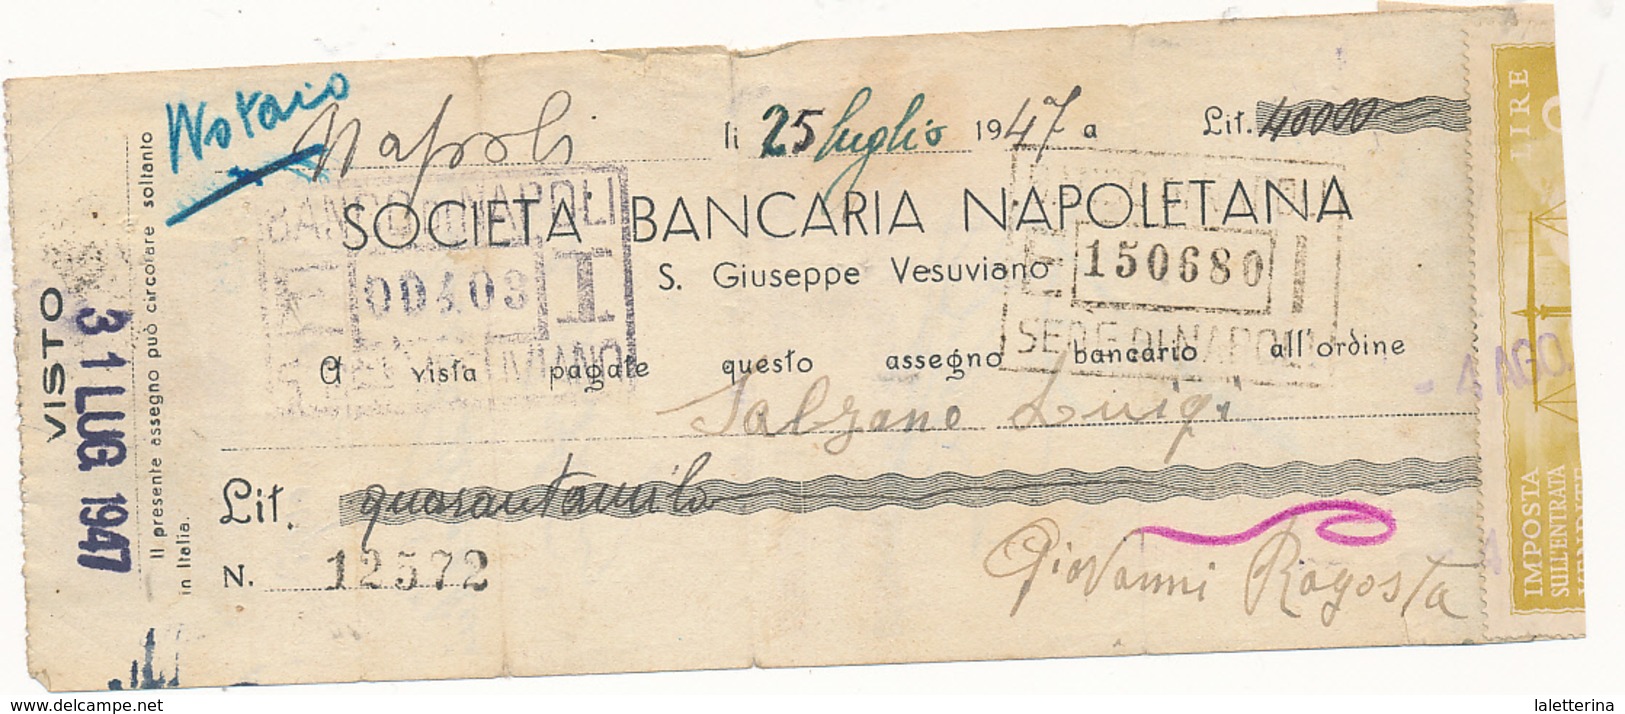 1947 SAN GIUSEPPE VESUVIANO SOCIETA' BANCARIA NAPOLETANA ASSEGNO - Cheques & Traveler's Cheques